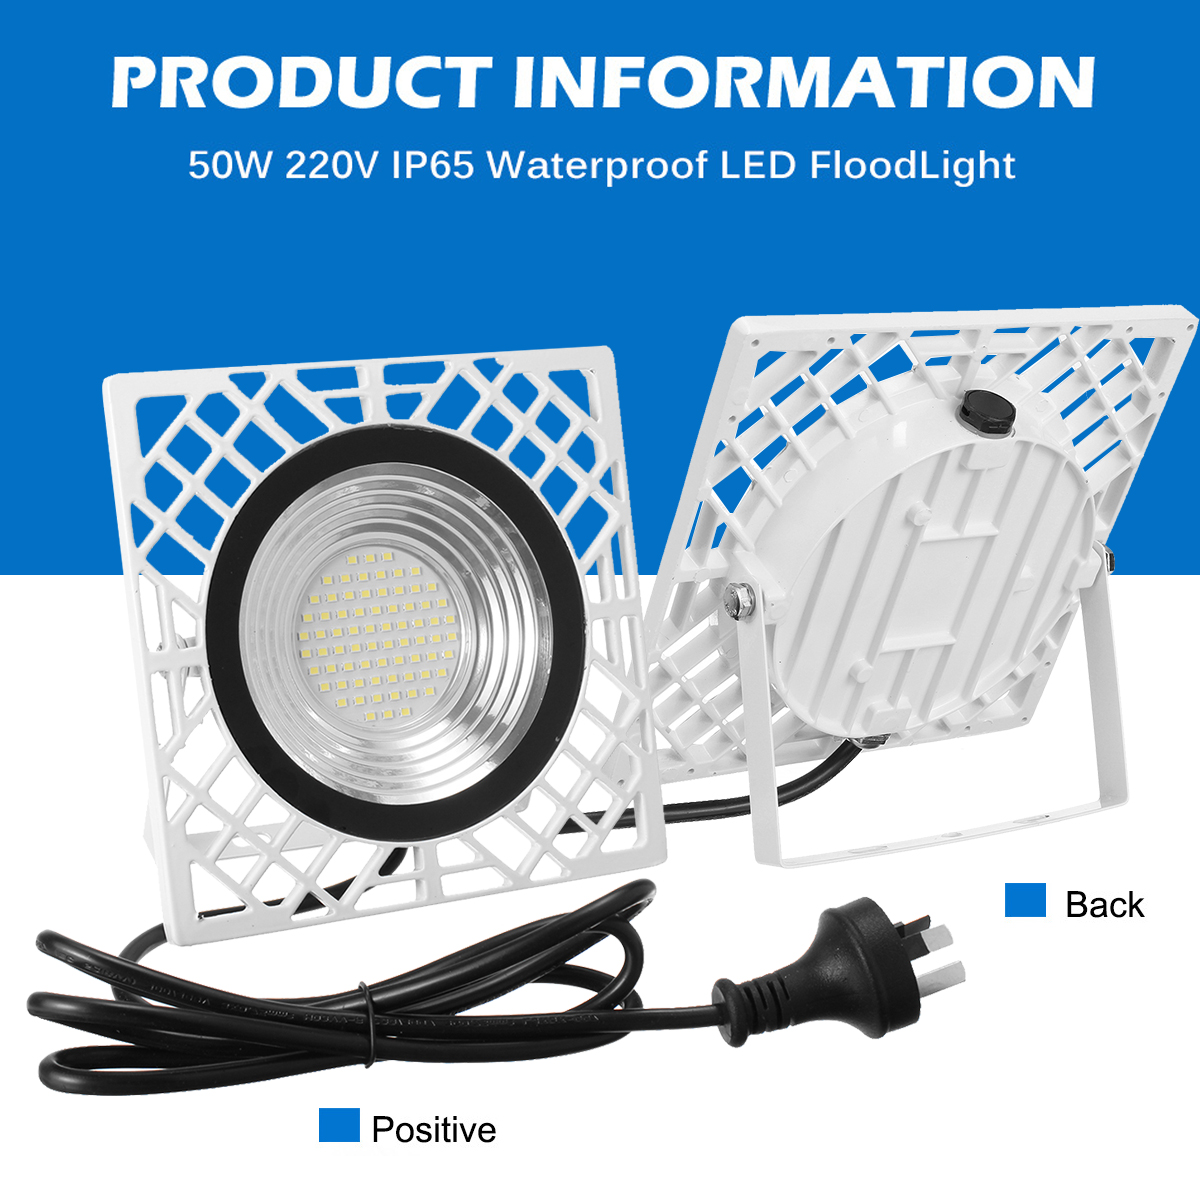 50W-LED-Flood-Light-110V220V--IP65-Waterproof-Outdoor-LED-Lamp-With-Adjustable-Angle-Bracket-Suitabl-1943488-2